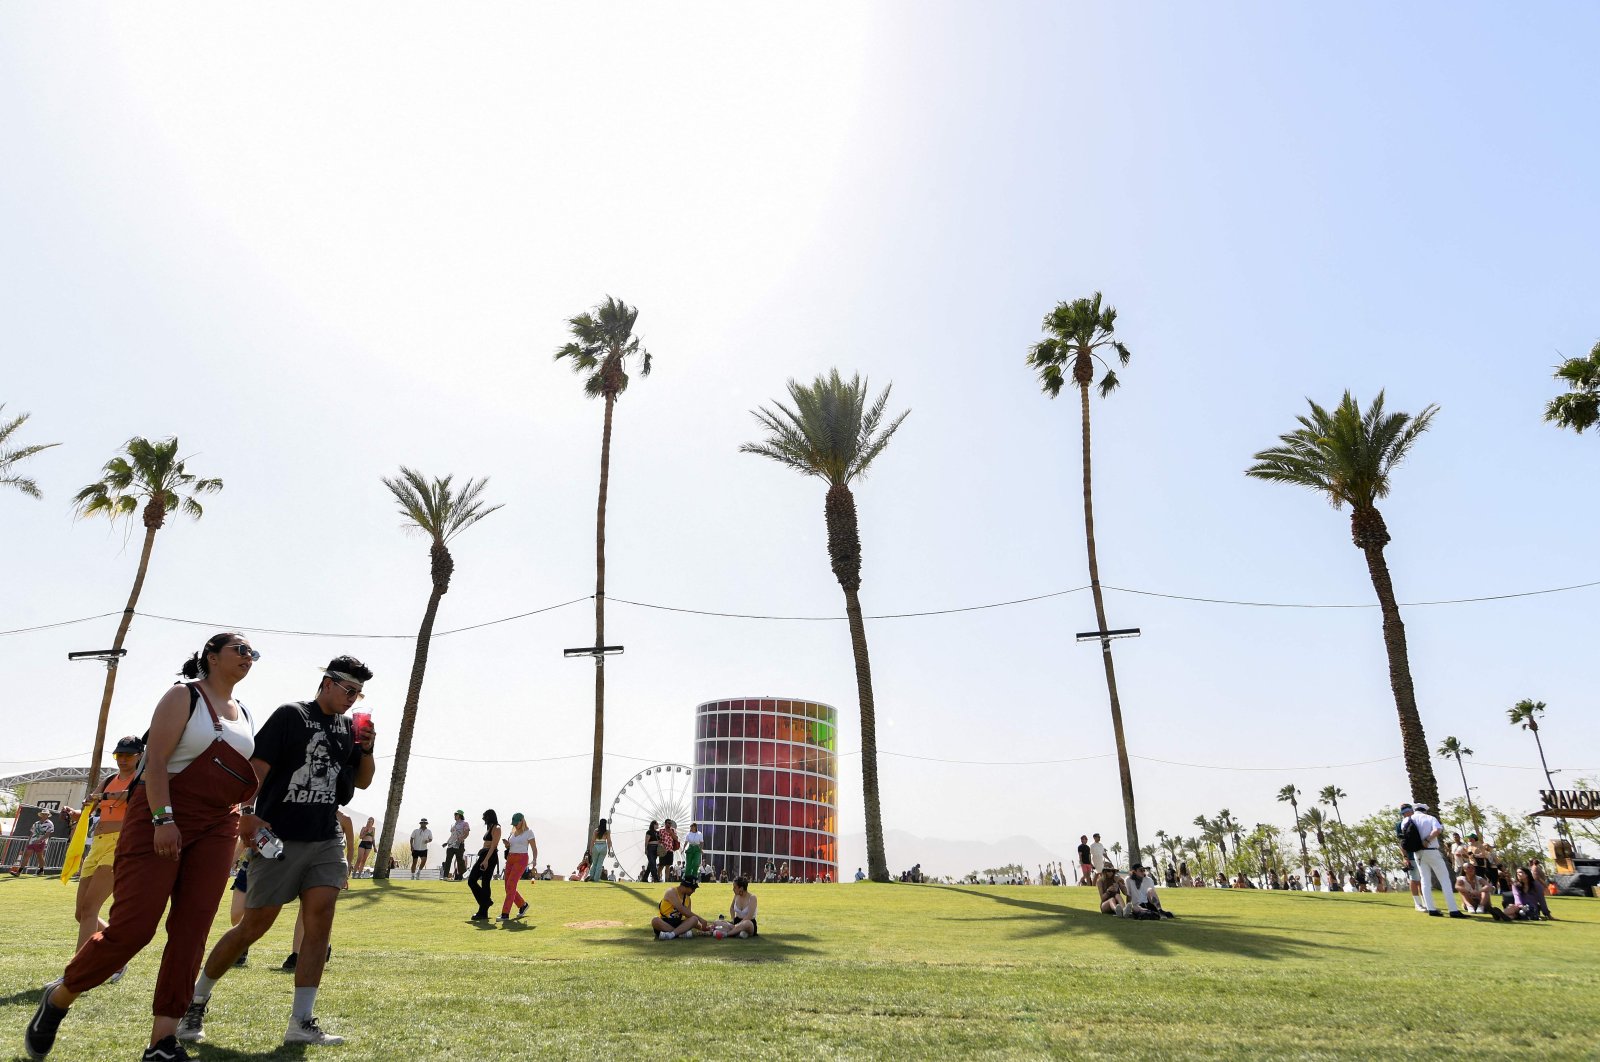 Kembalinya Coachella membawa bisnis besar ke gurun California